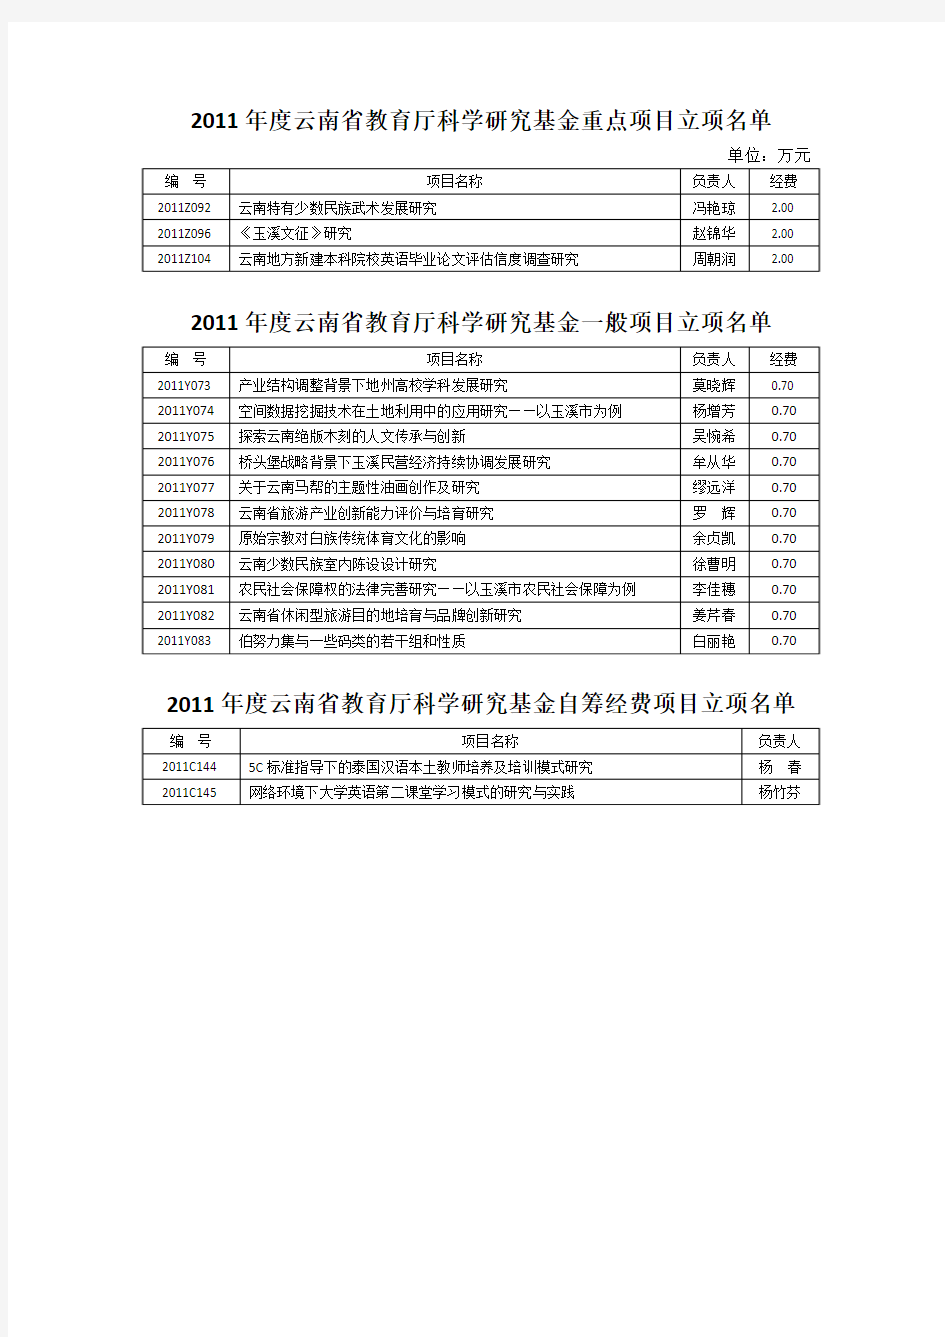 2011年度云南省教育厅科学研究基金重点项目立项名单